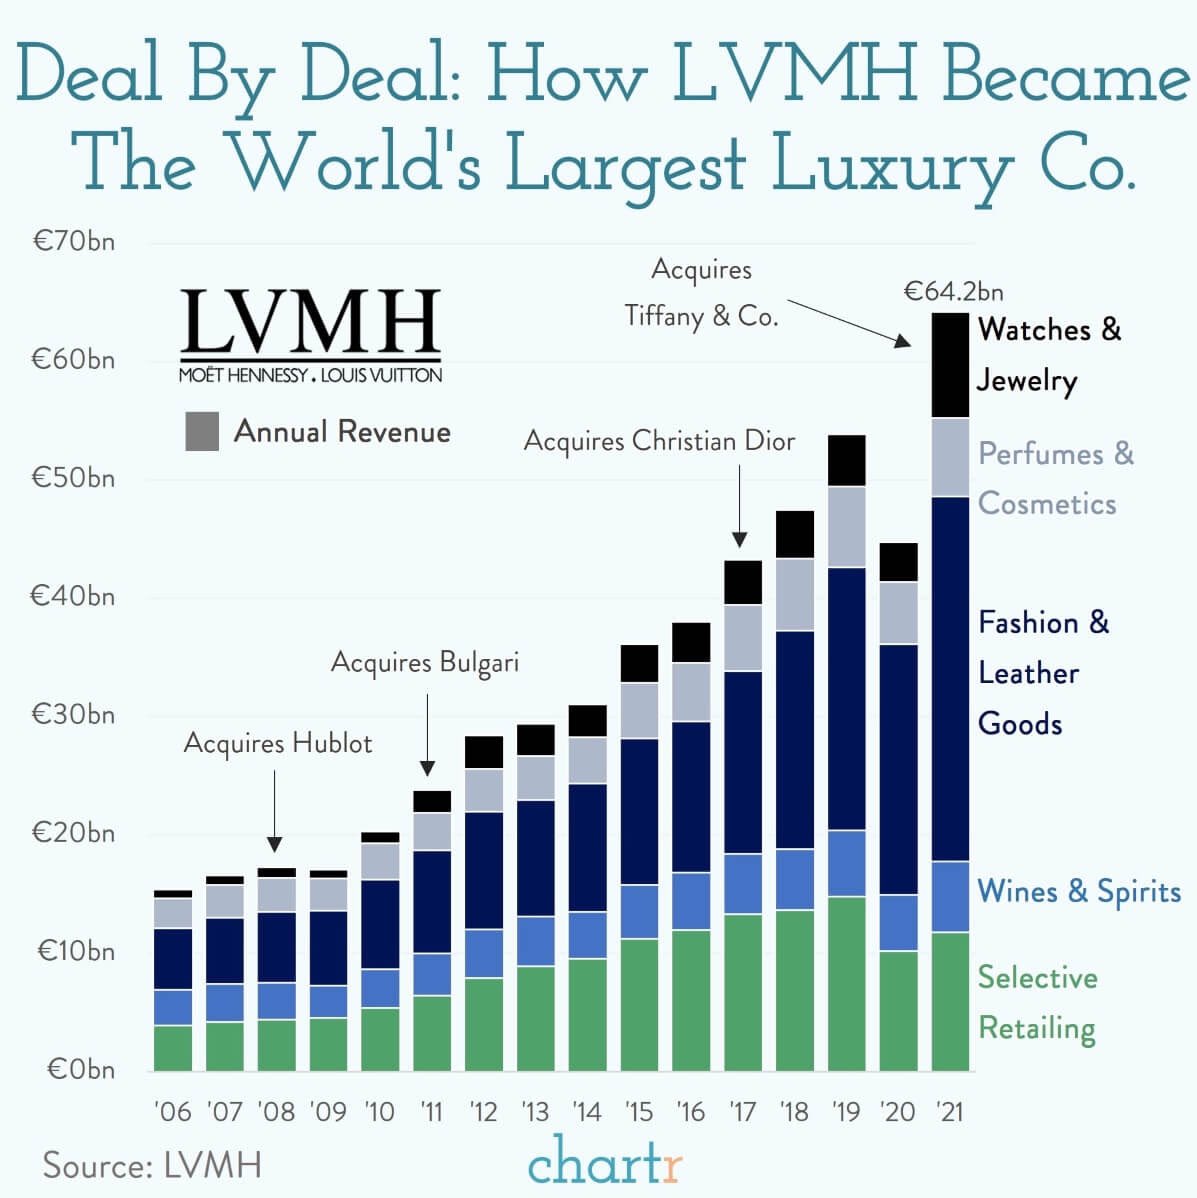 LVMH: Brief History of LVMH